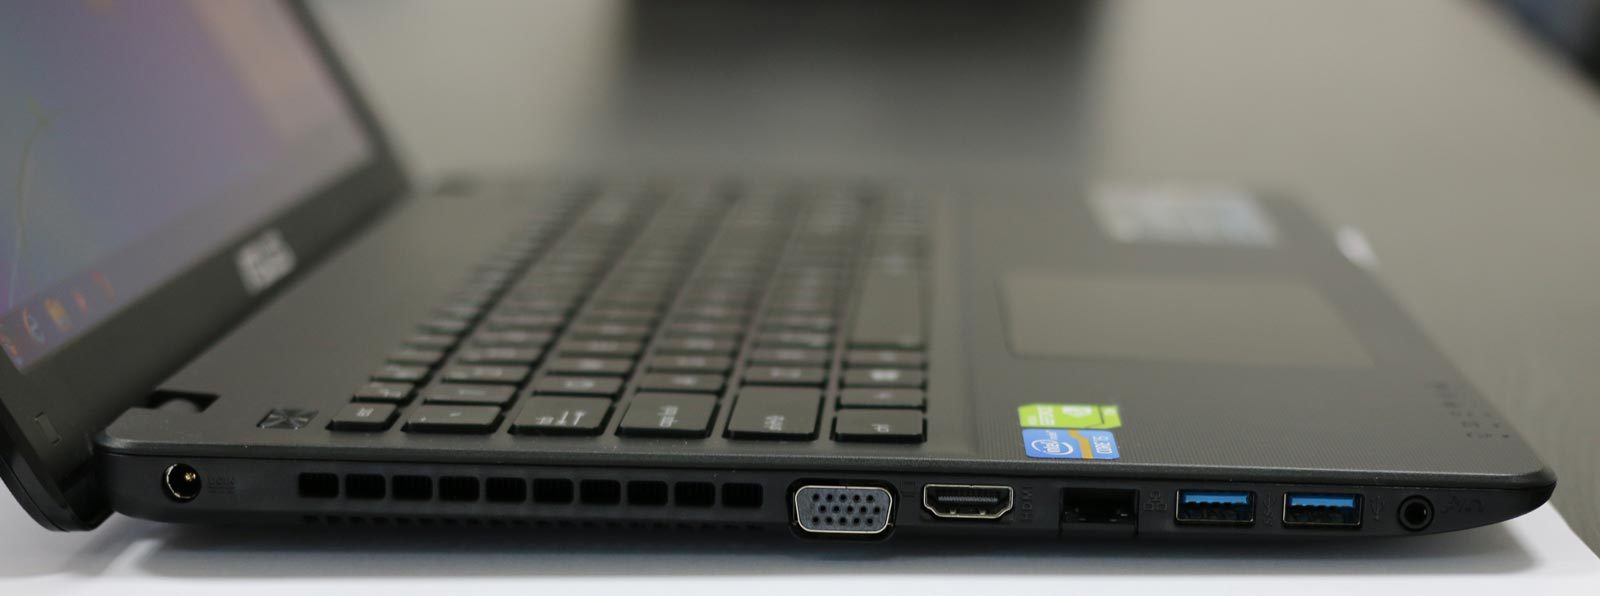 Review Laptop ASUS X552CL SX033D